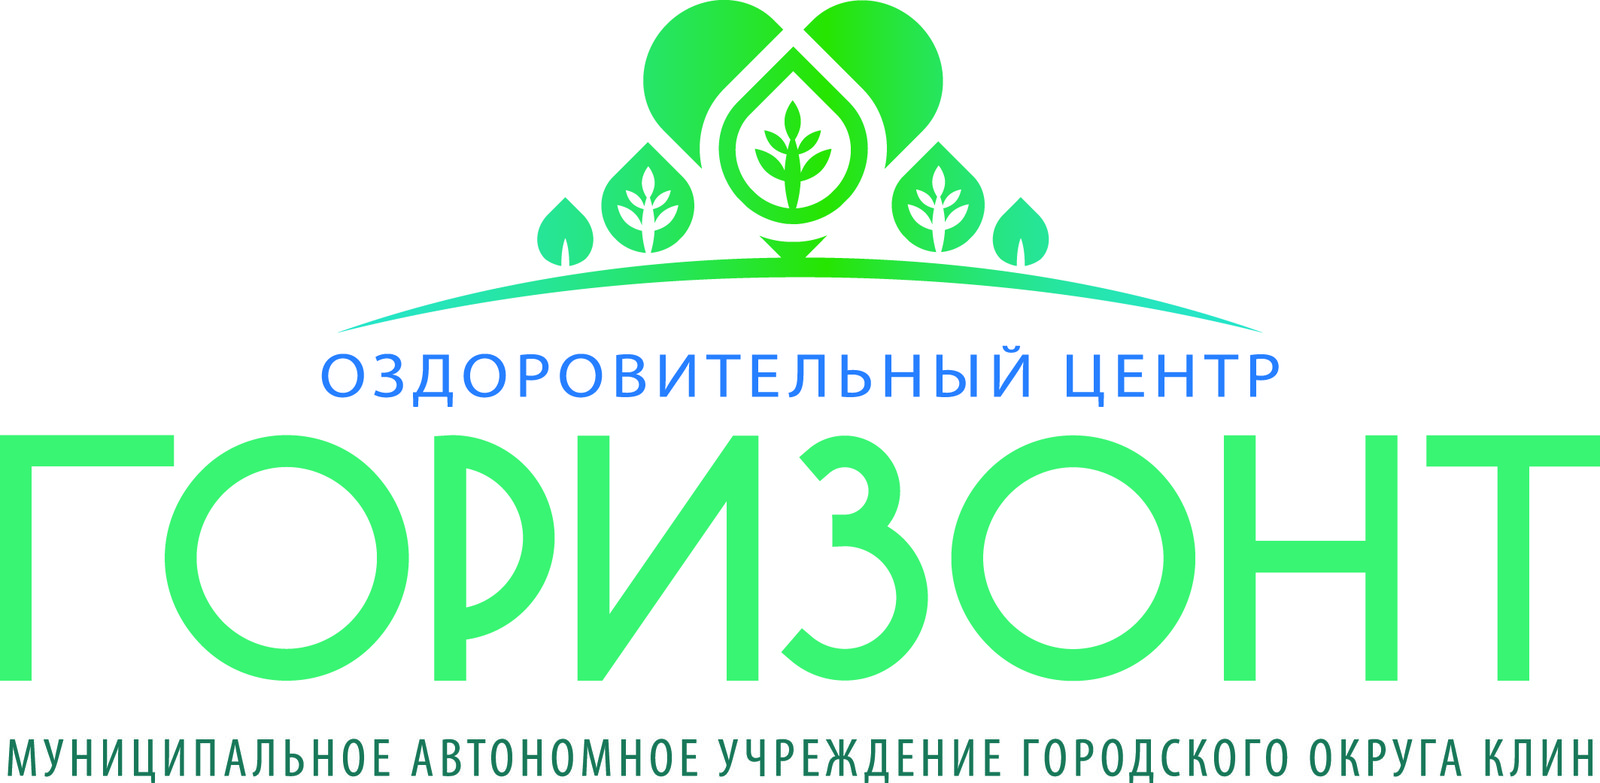 Логотип лагеря Муниципальное автономное учреждение городского округа Клин "Оздоровительный центр "ГОРИЗОНТ"